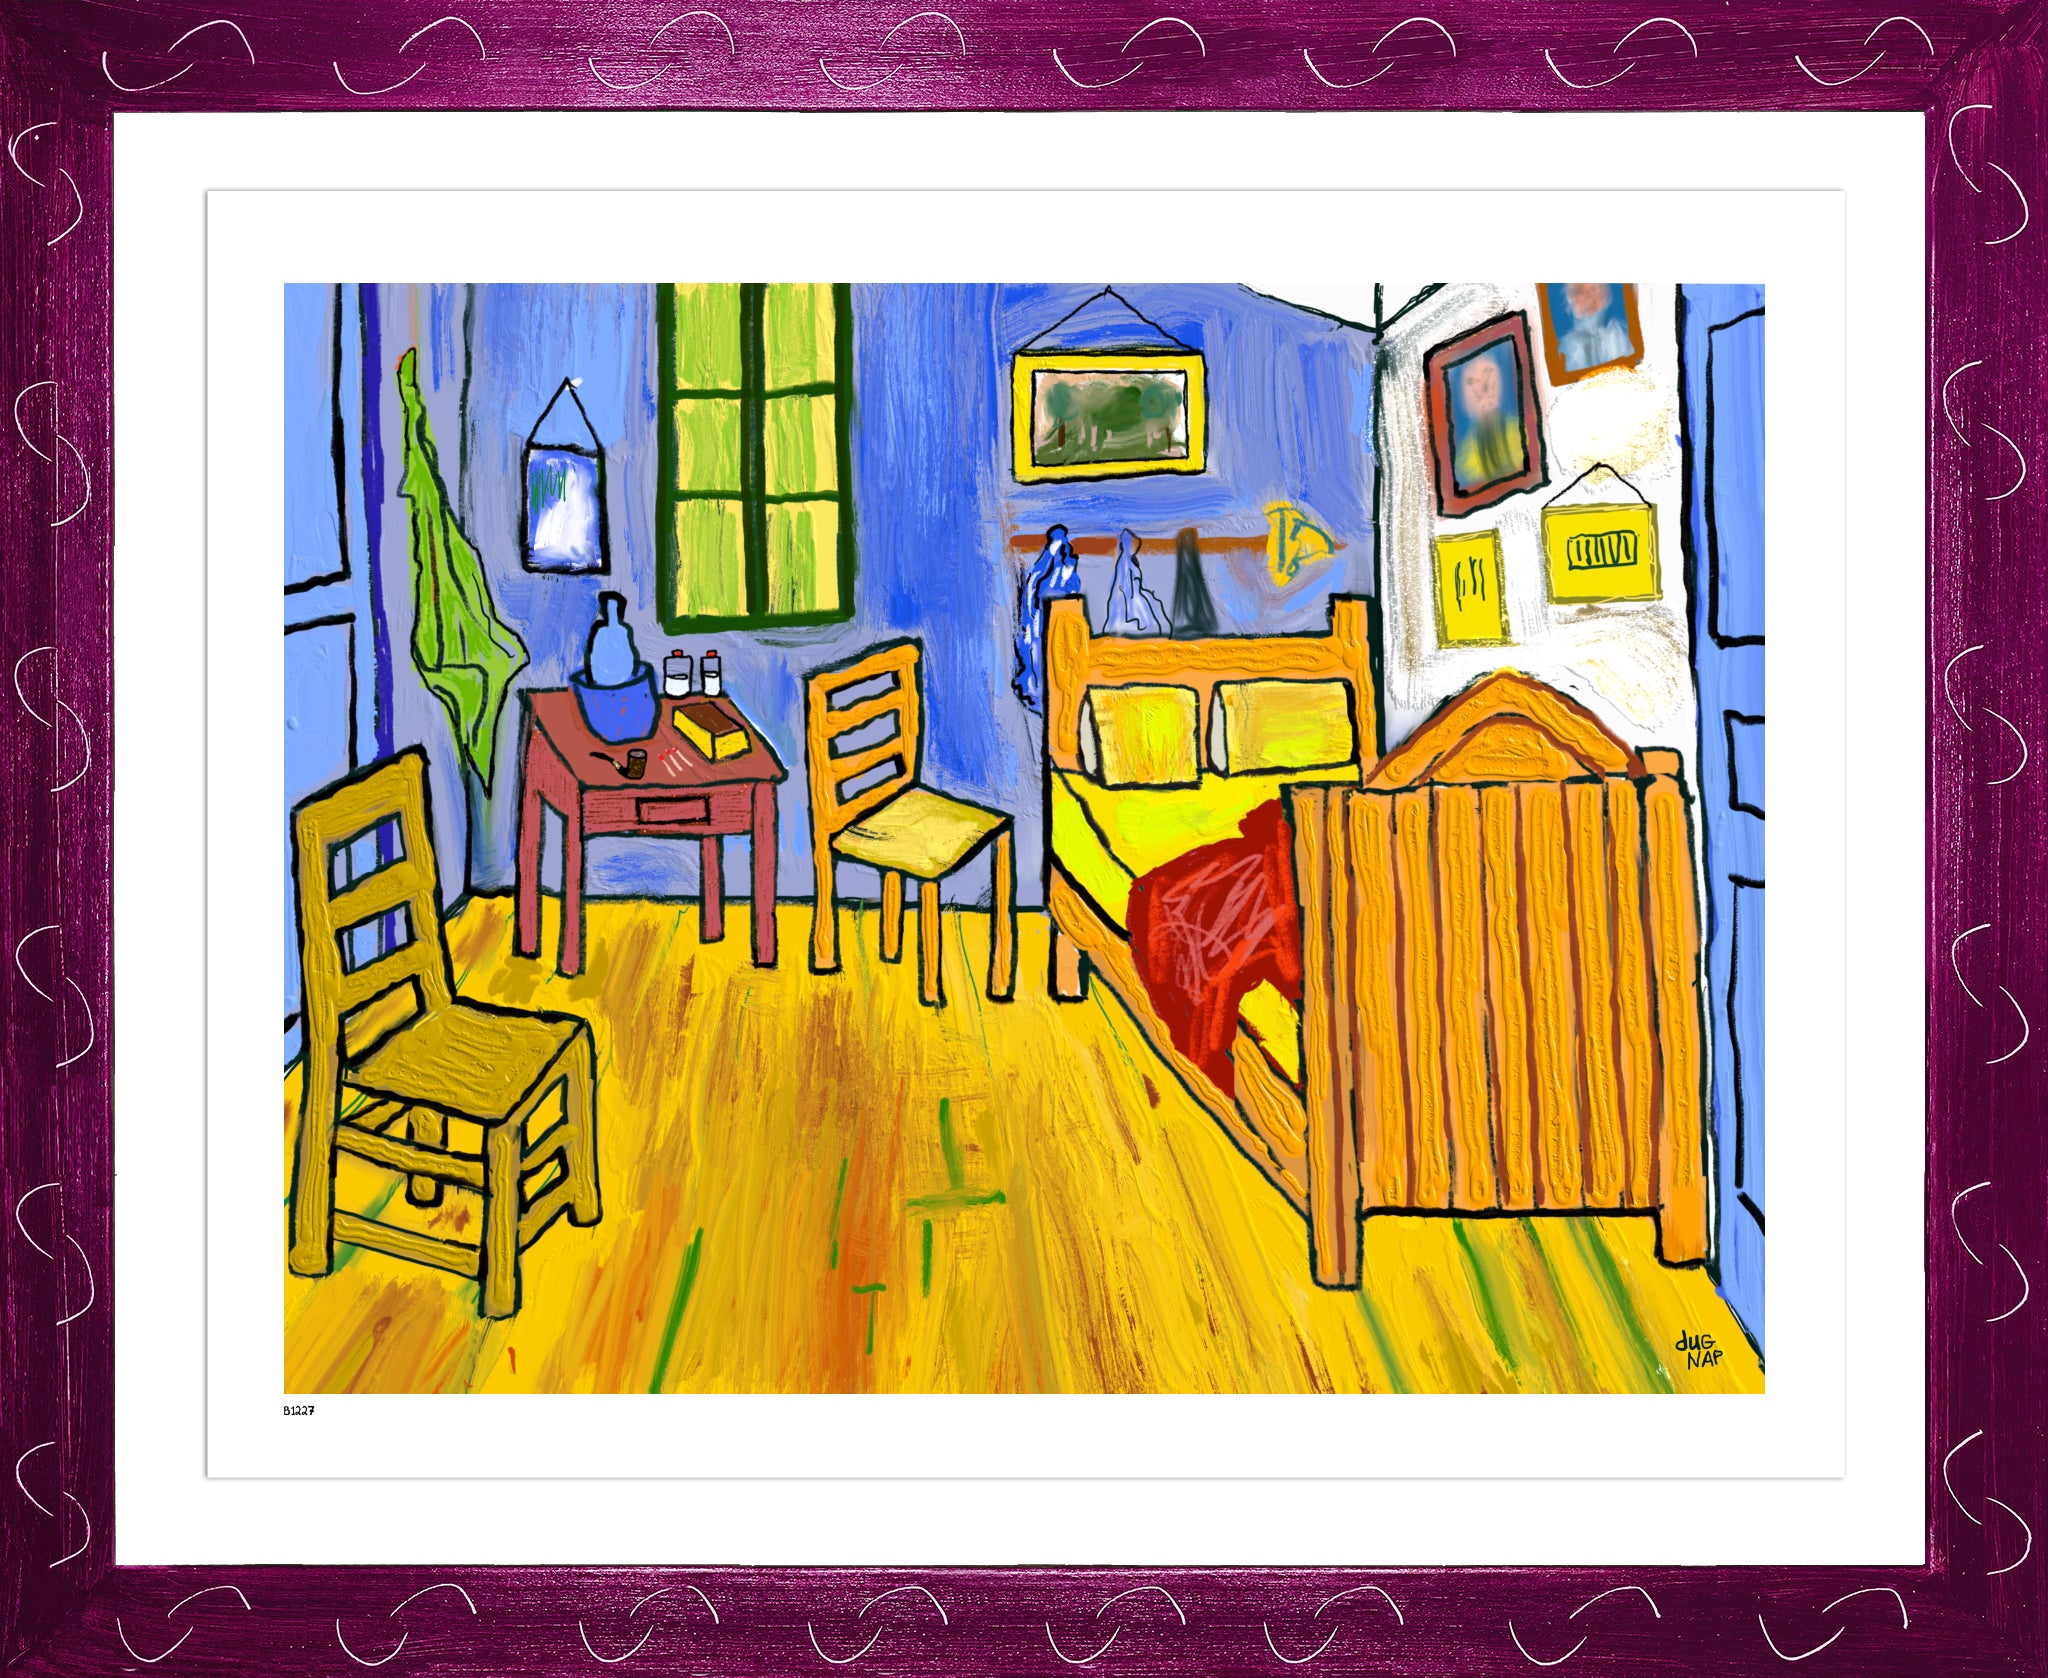 P1227 - Van Gogh's Bedroom